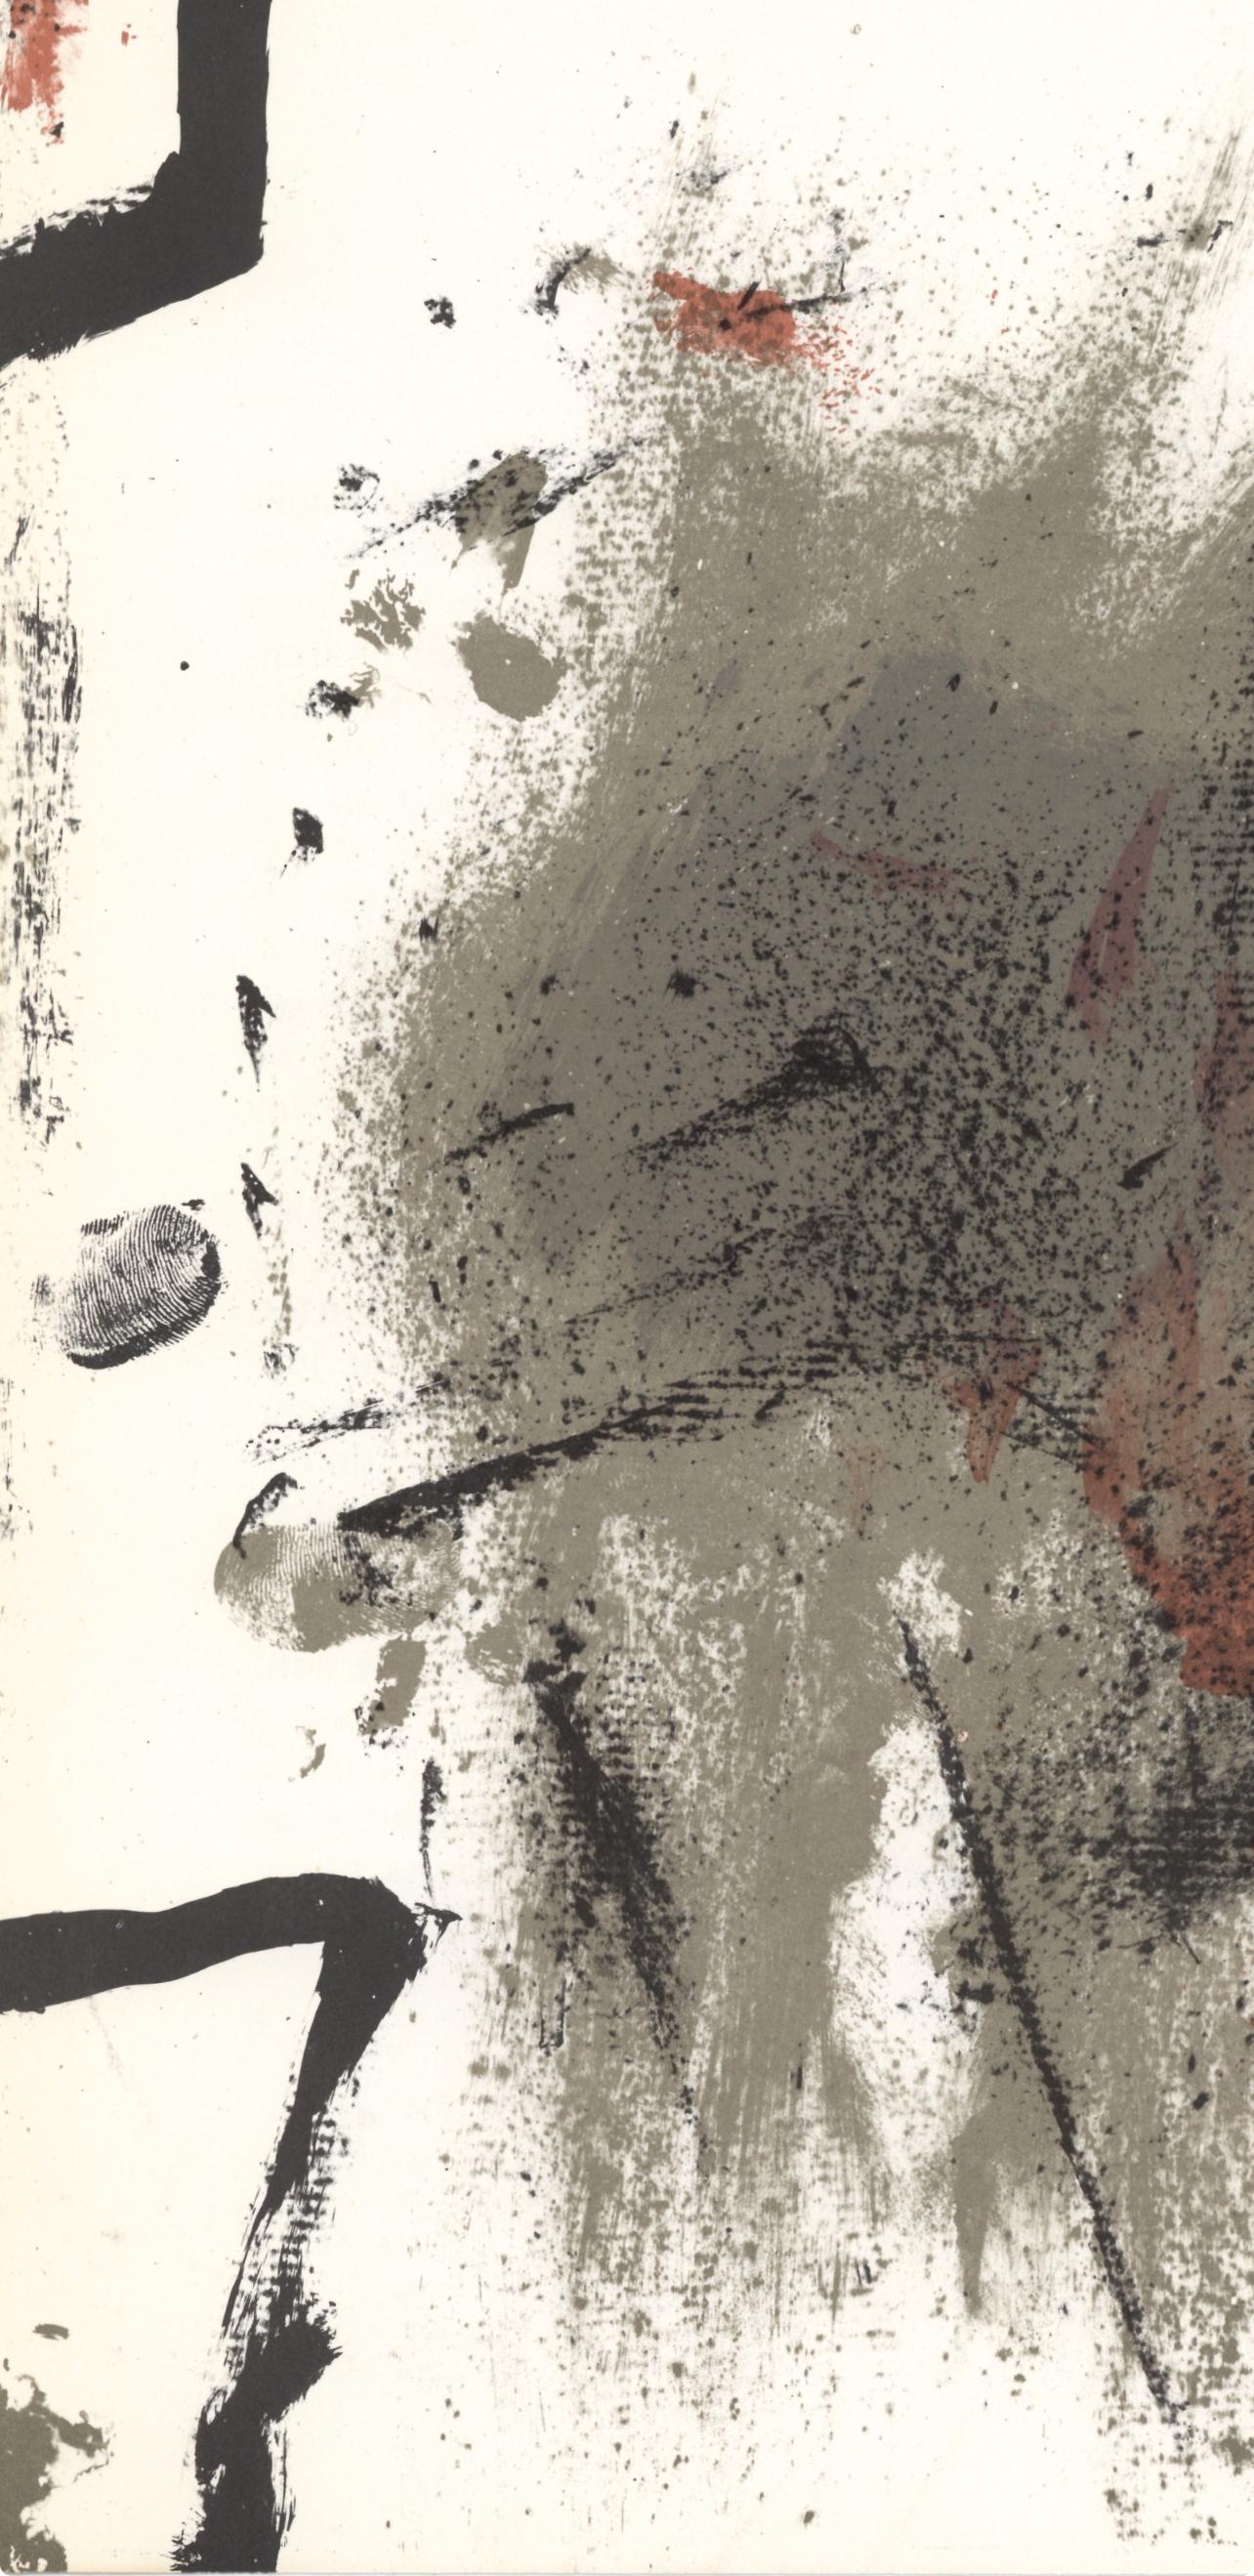 Tàpies, Composition, Derrière le miroir (after) - Post-War Print by Antoni Tàpies